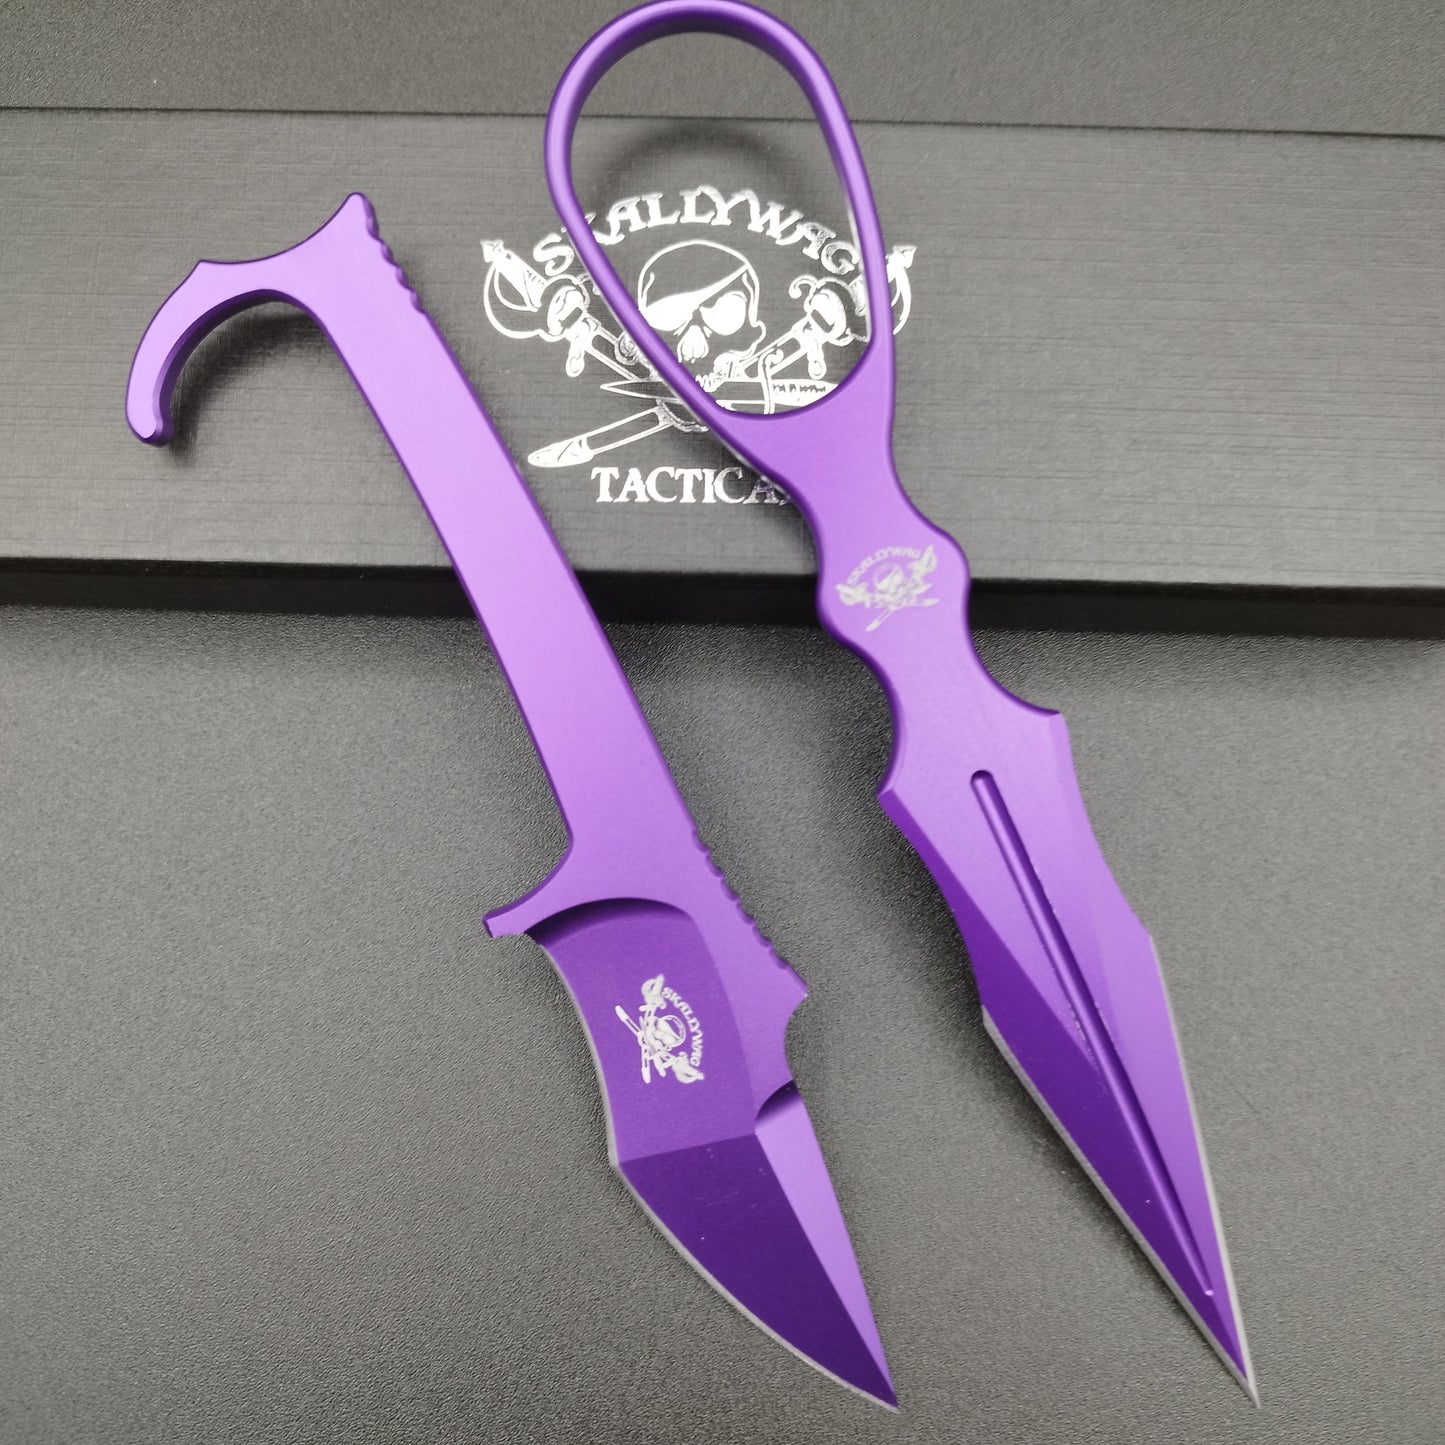 Skallywag Tactical Aluminum Dagger, Purple, 6061 Aluminium